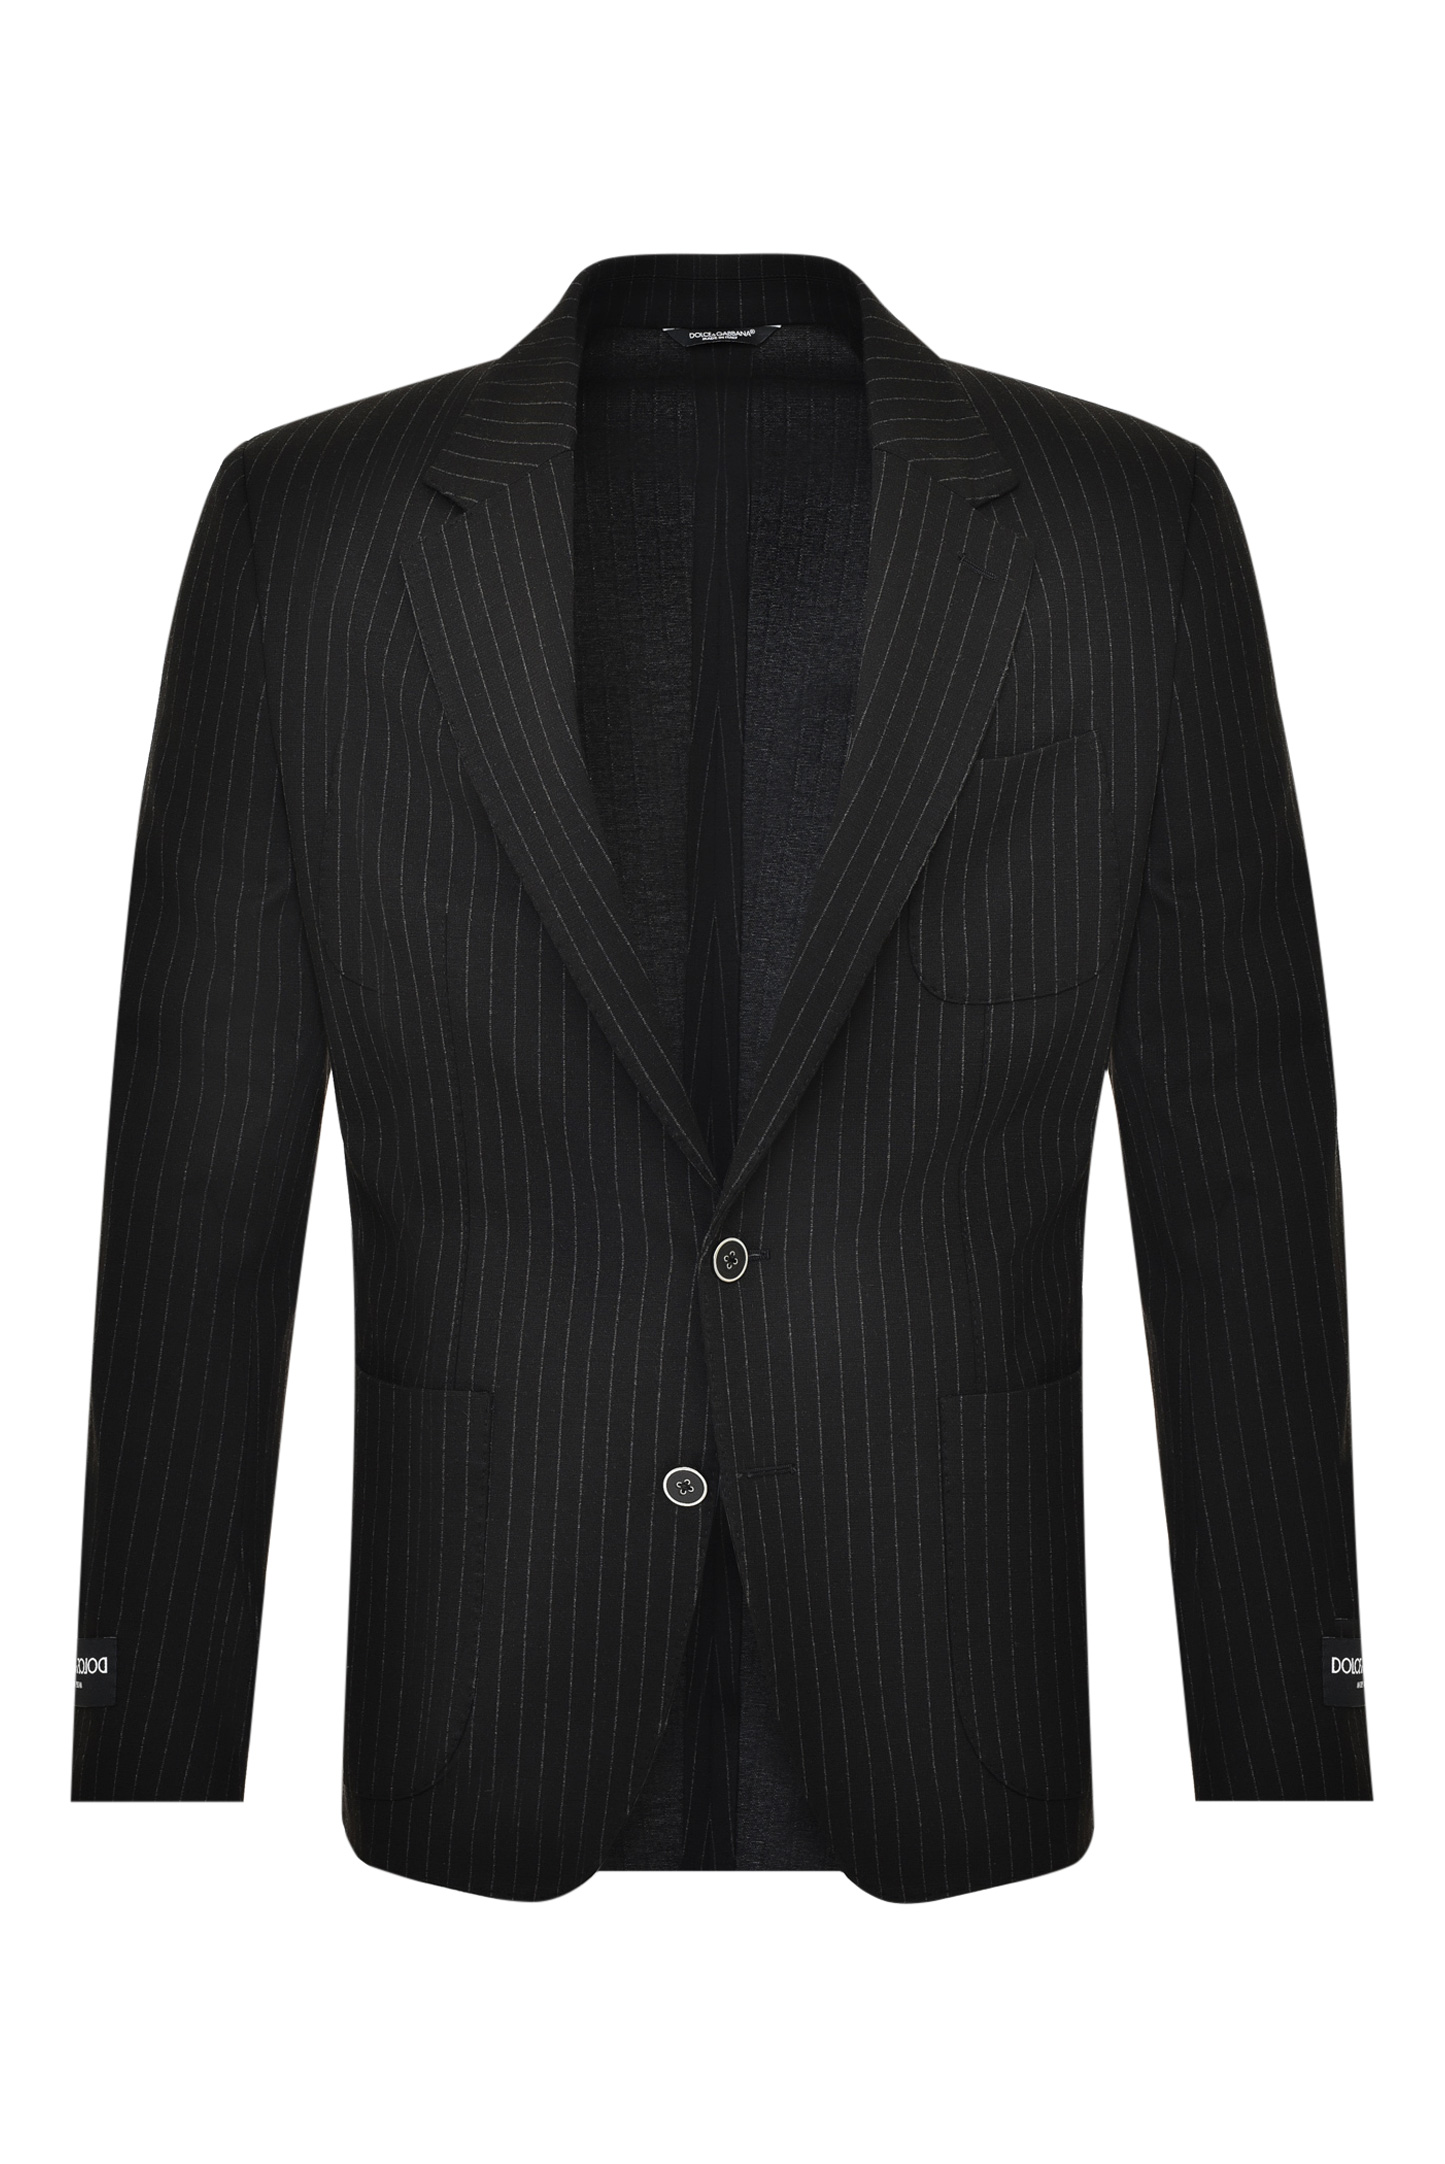 Пиджак DOLCE & GABBANA G2PT9T FRRDY, цвет: Черный, Мужской